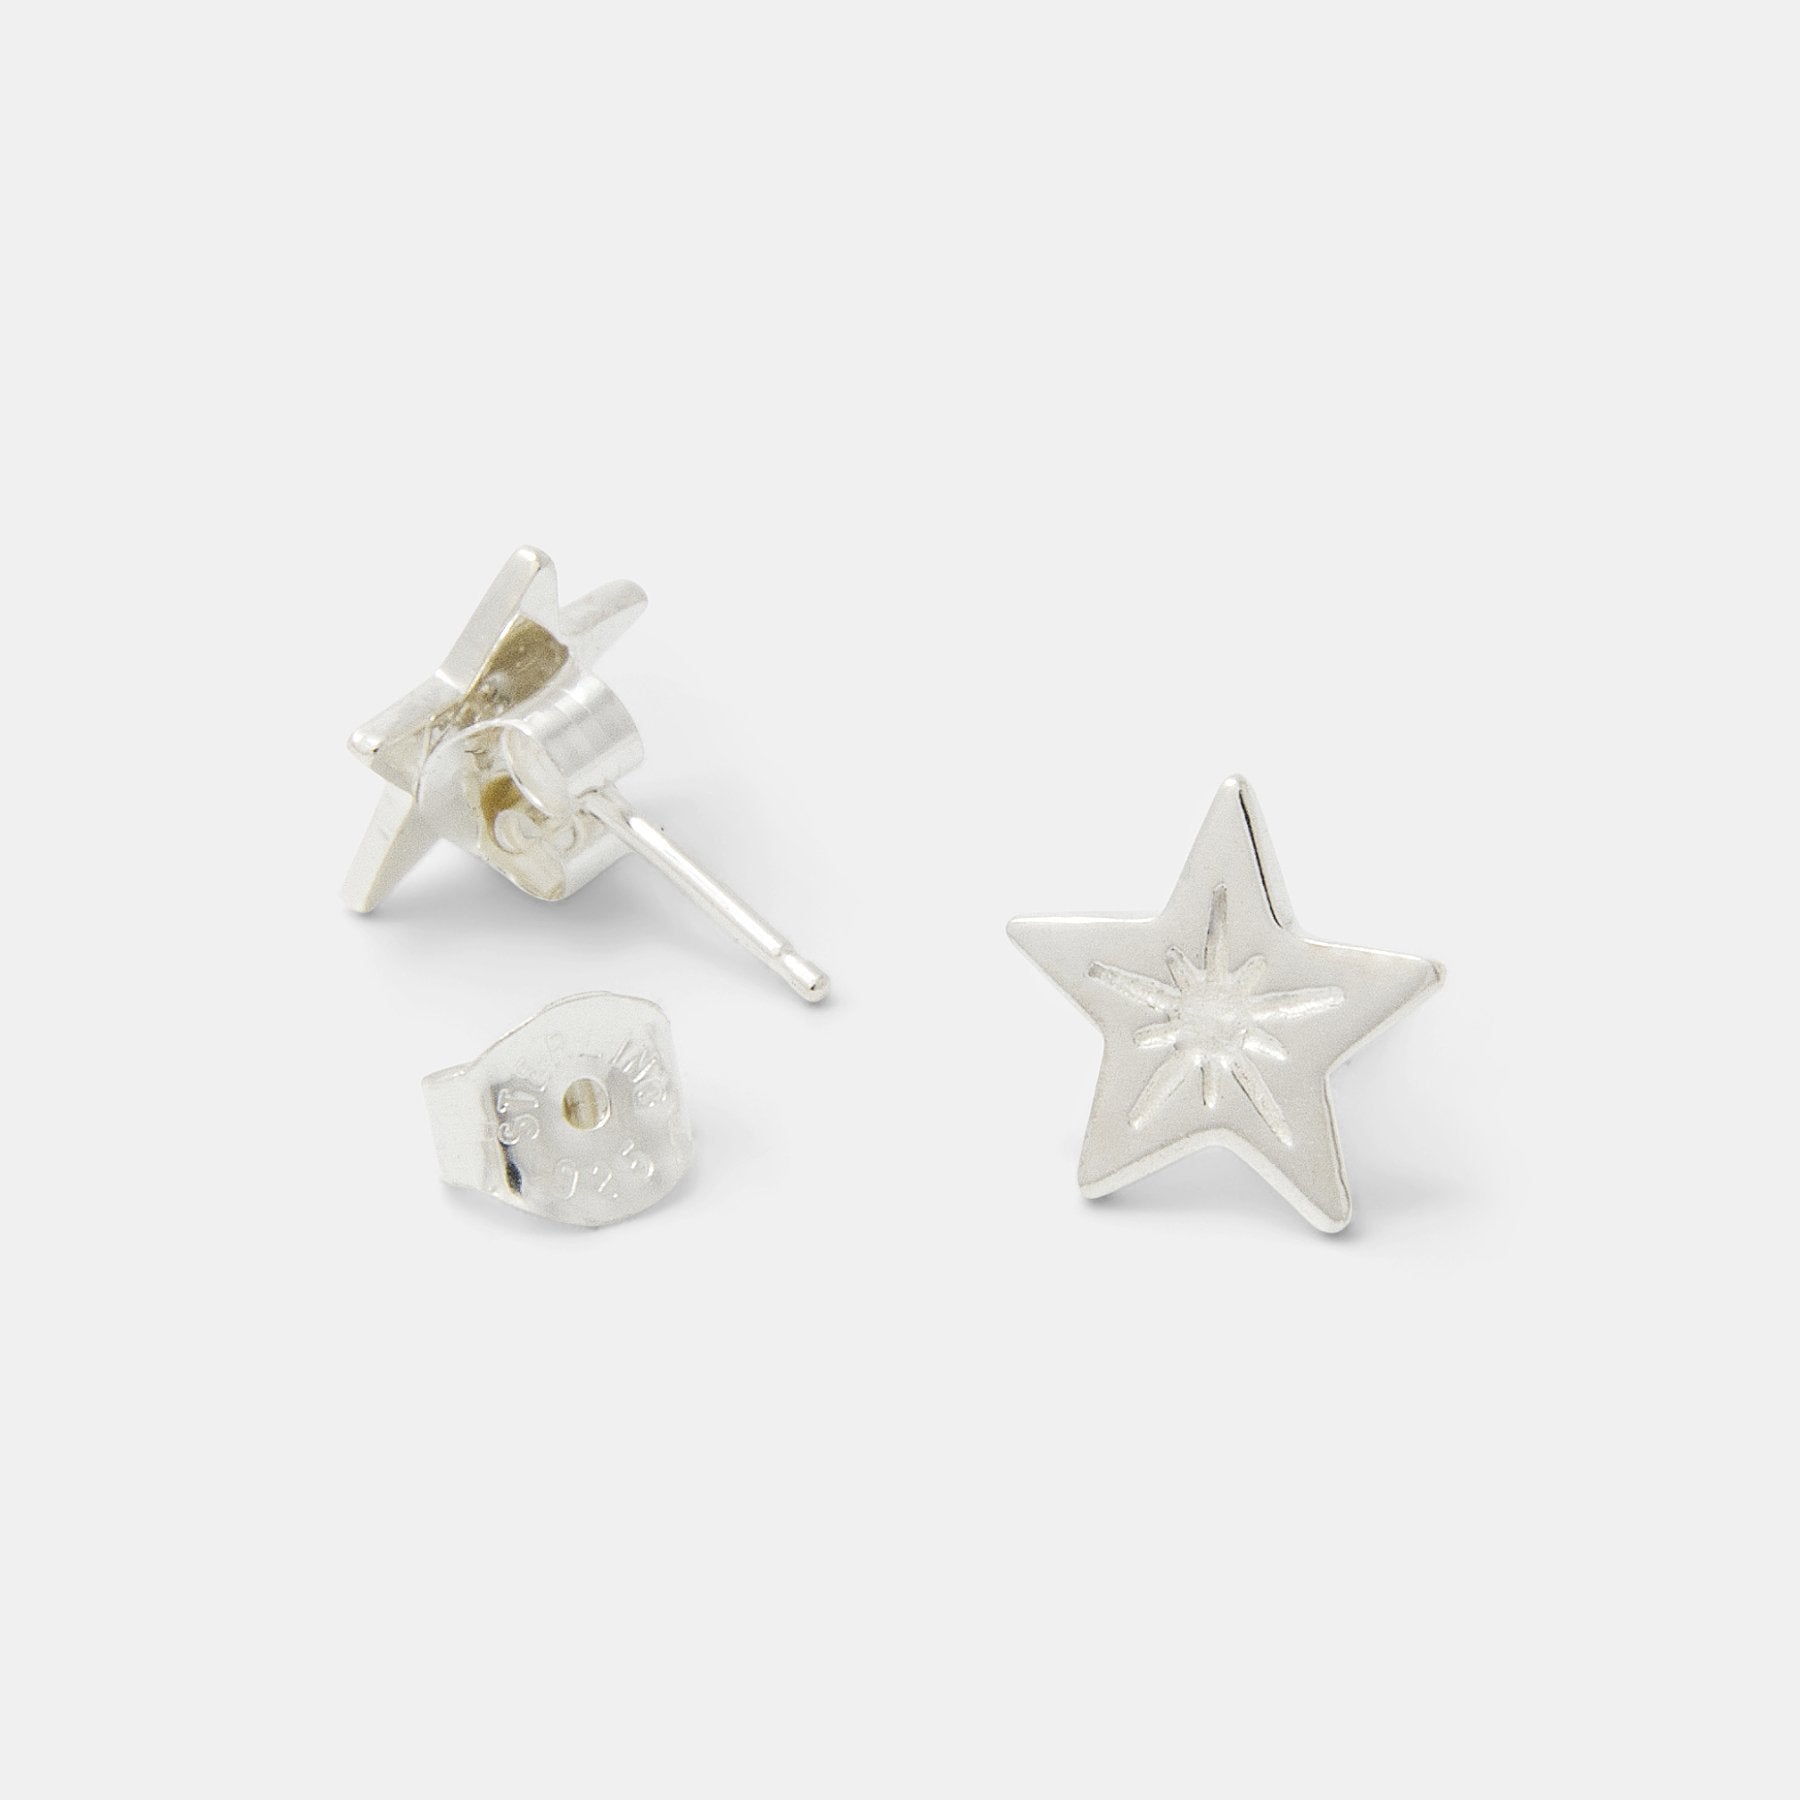 Little star silver stud earrings - Simone Walsh Jewellery Australia